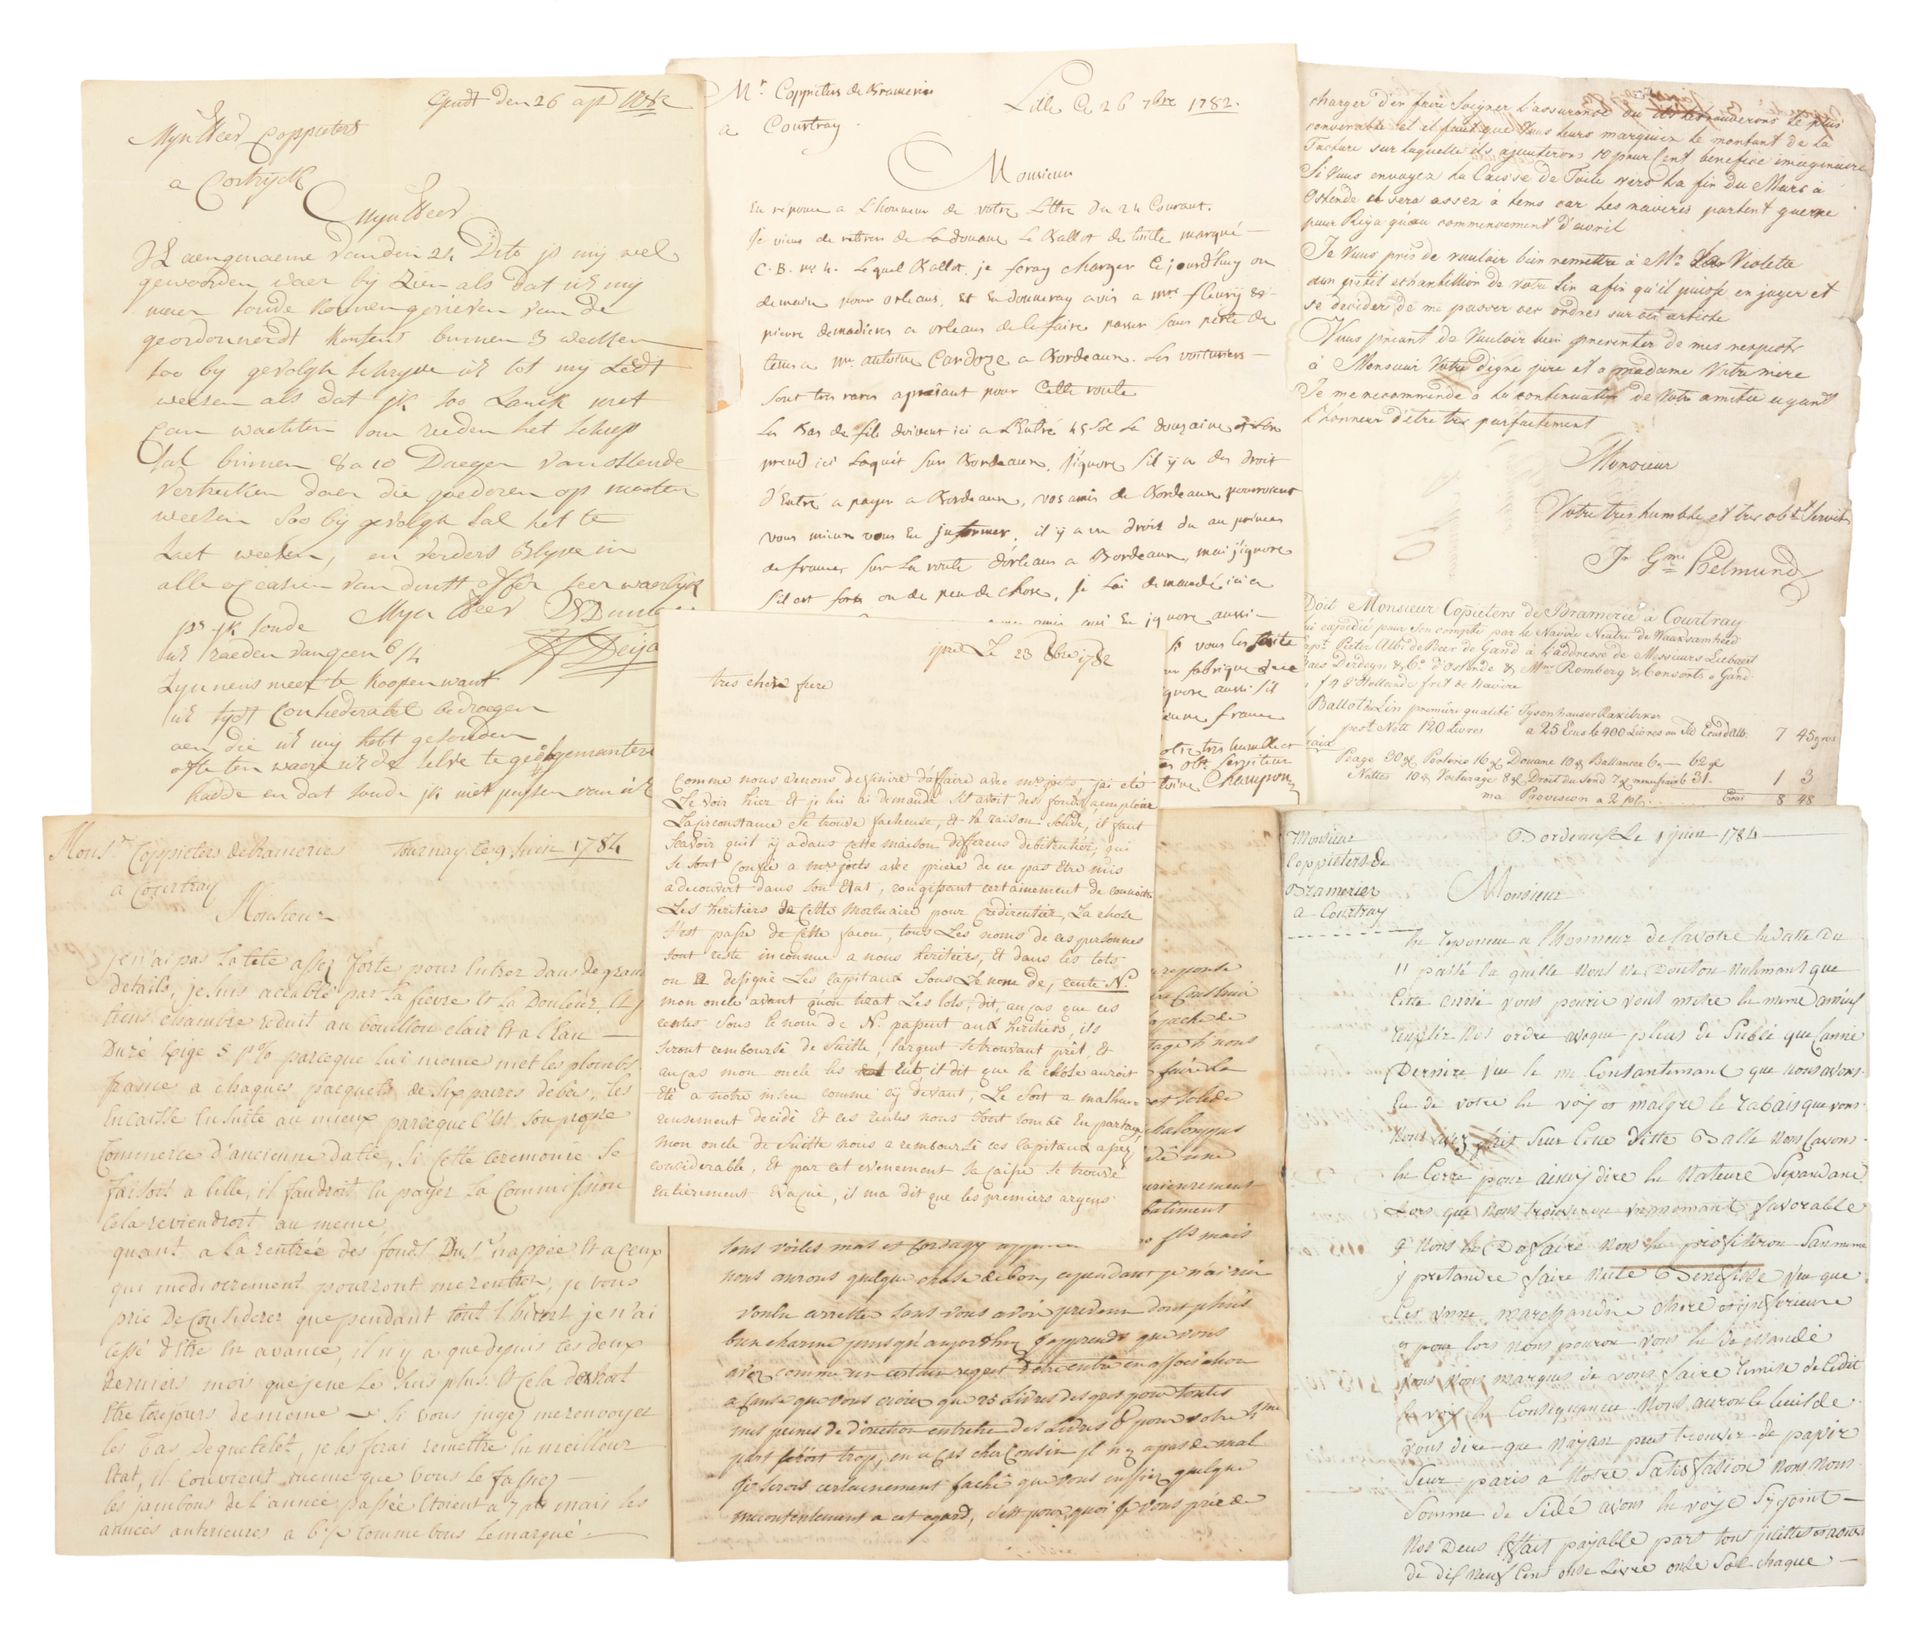 [ARCHIEF - COPPIETERS] Archief met handgeschreven brieven

44 handgeschreven bri&hellip;